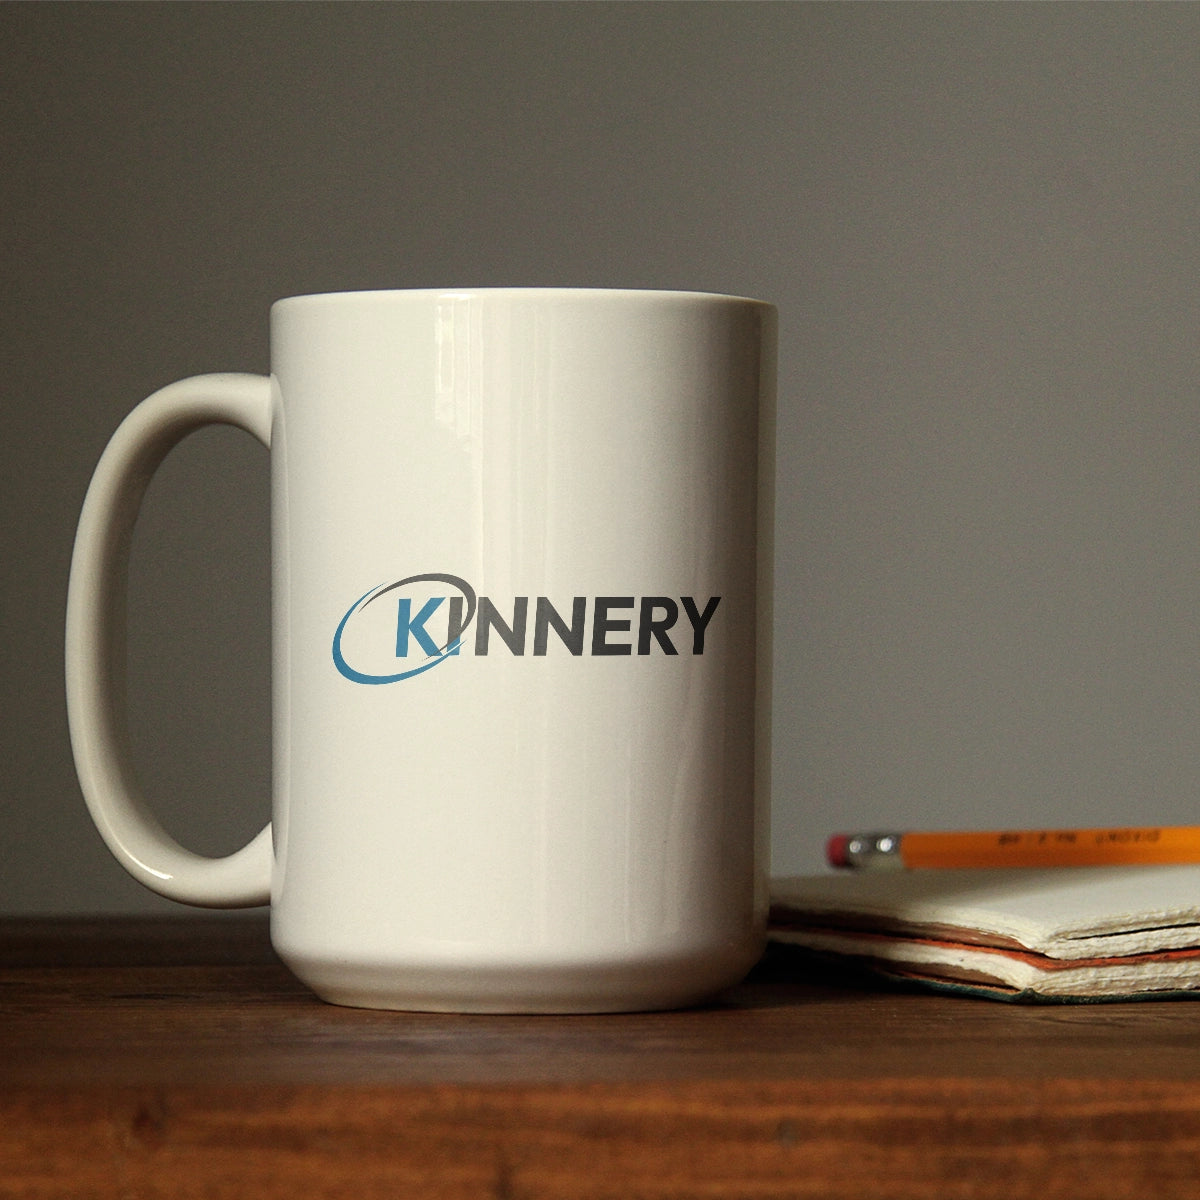 Kinnery.com